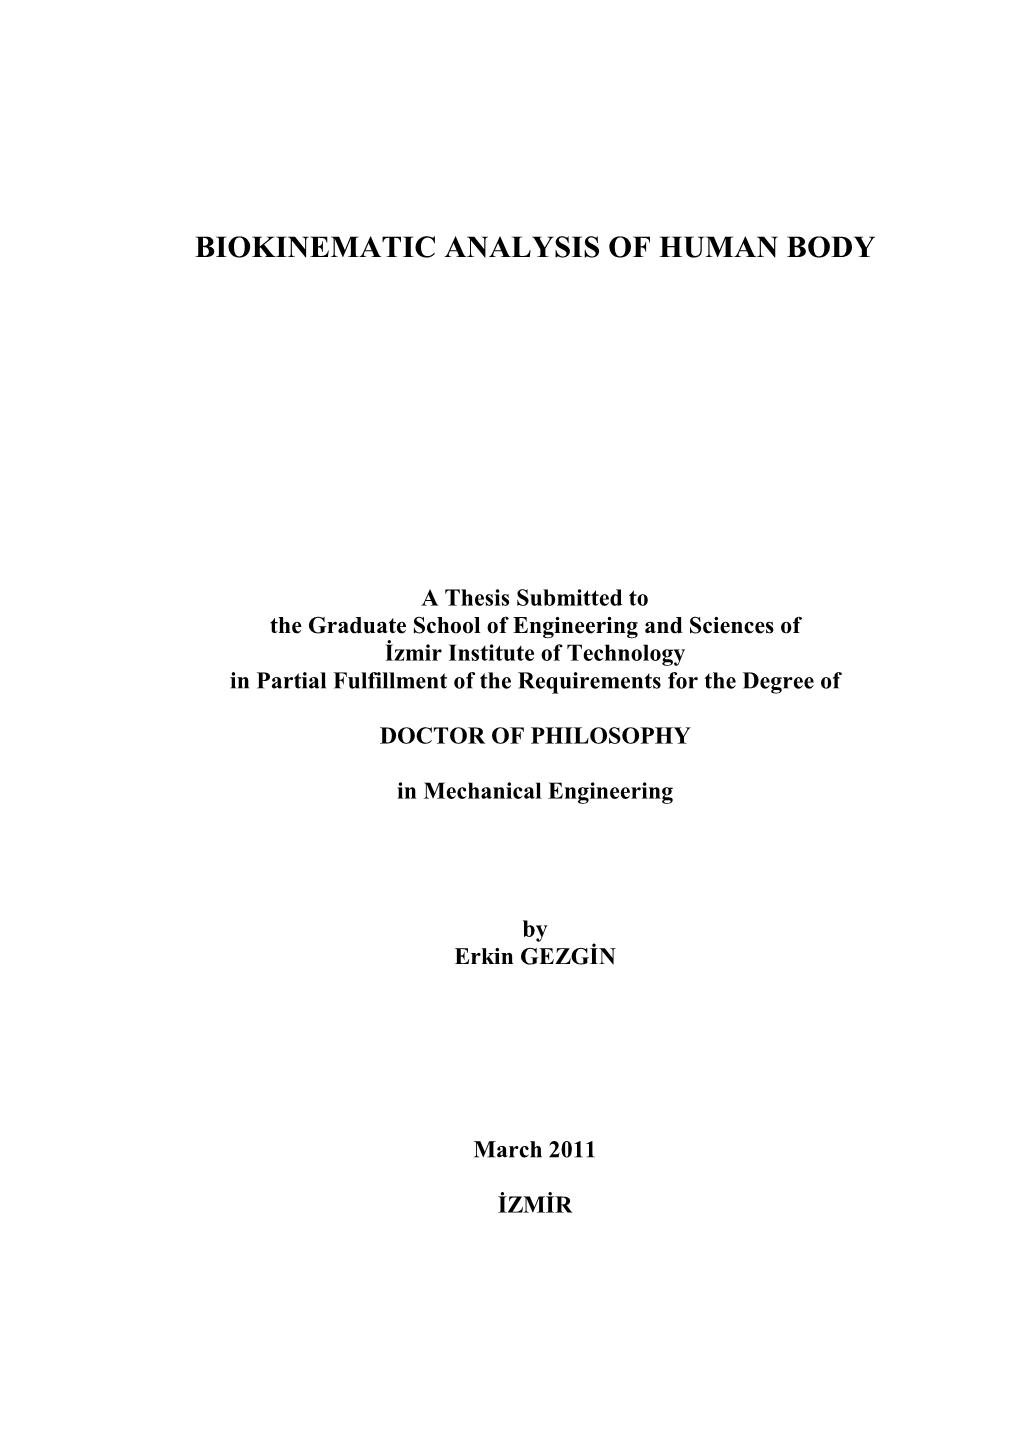 Biokinematic Analysis of Human Body